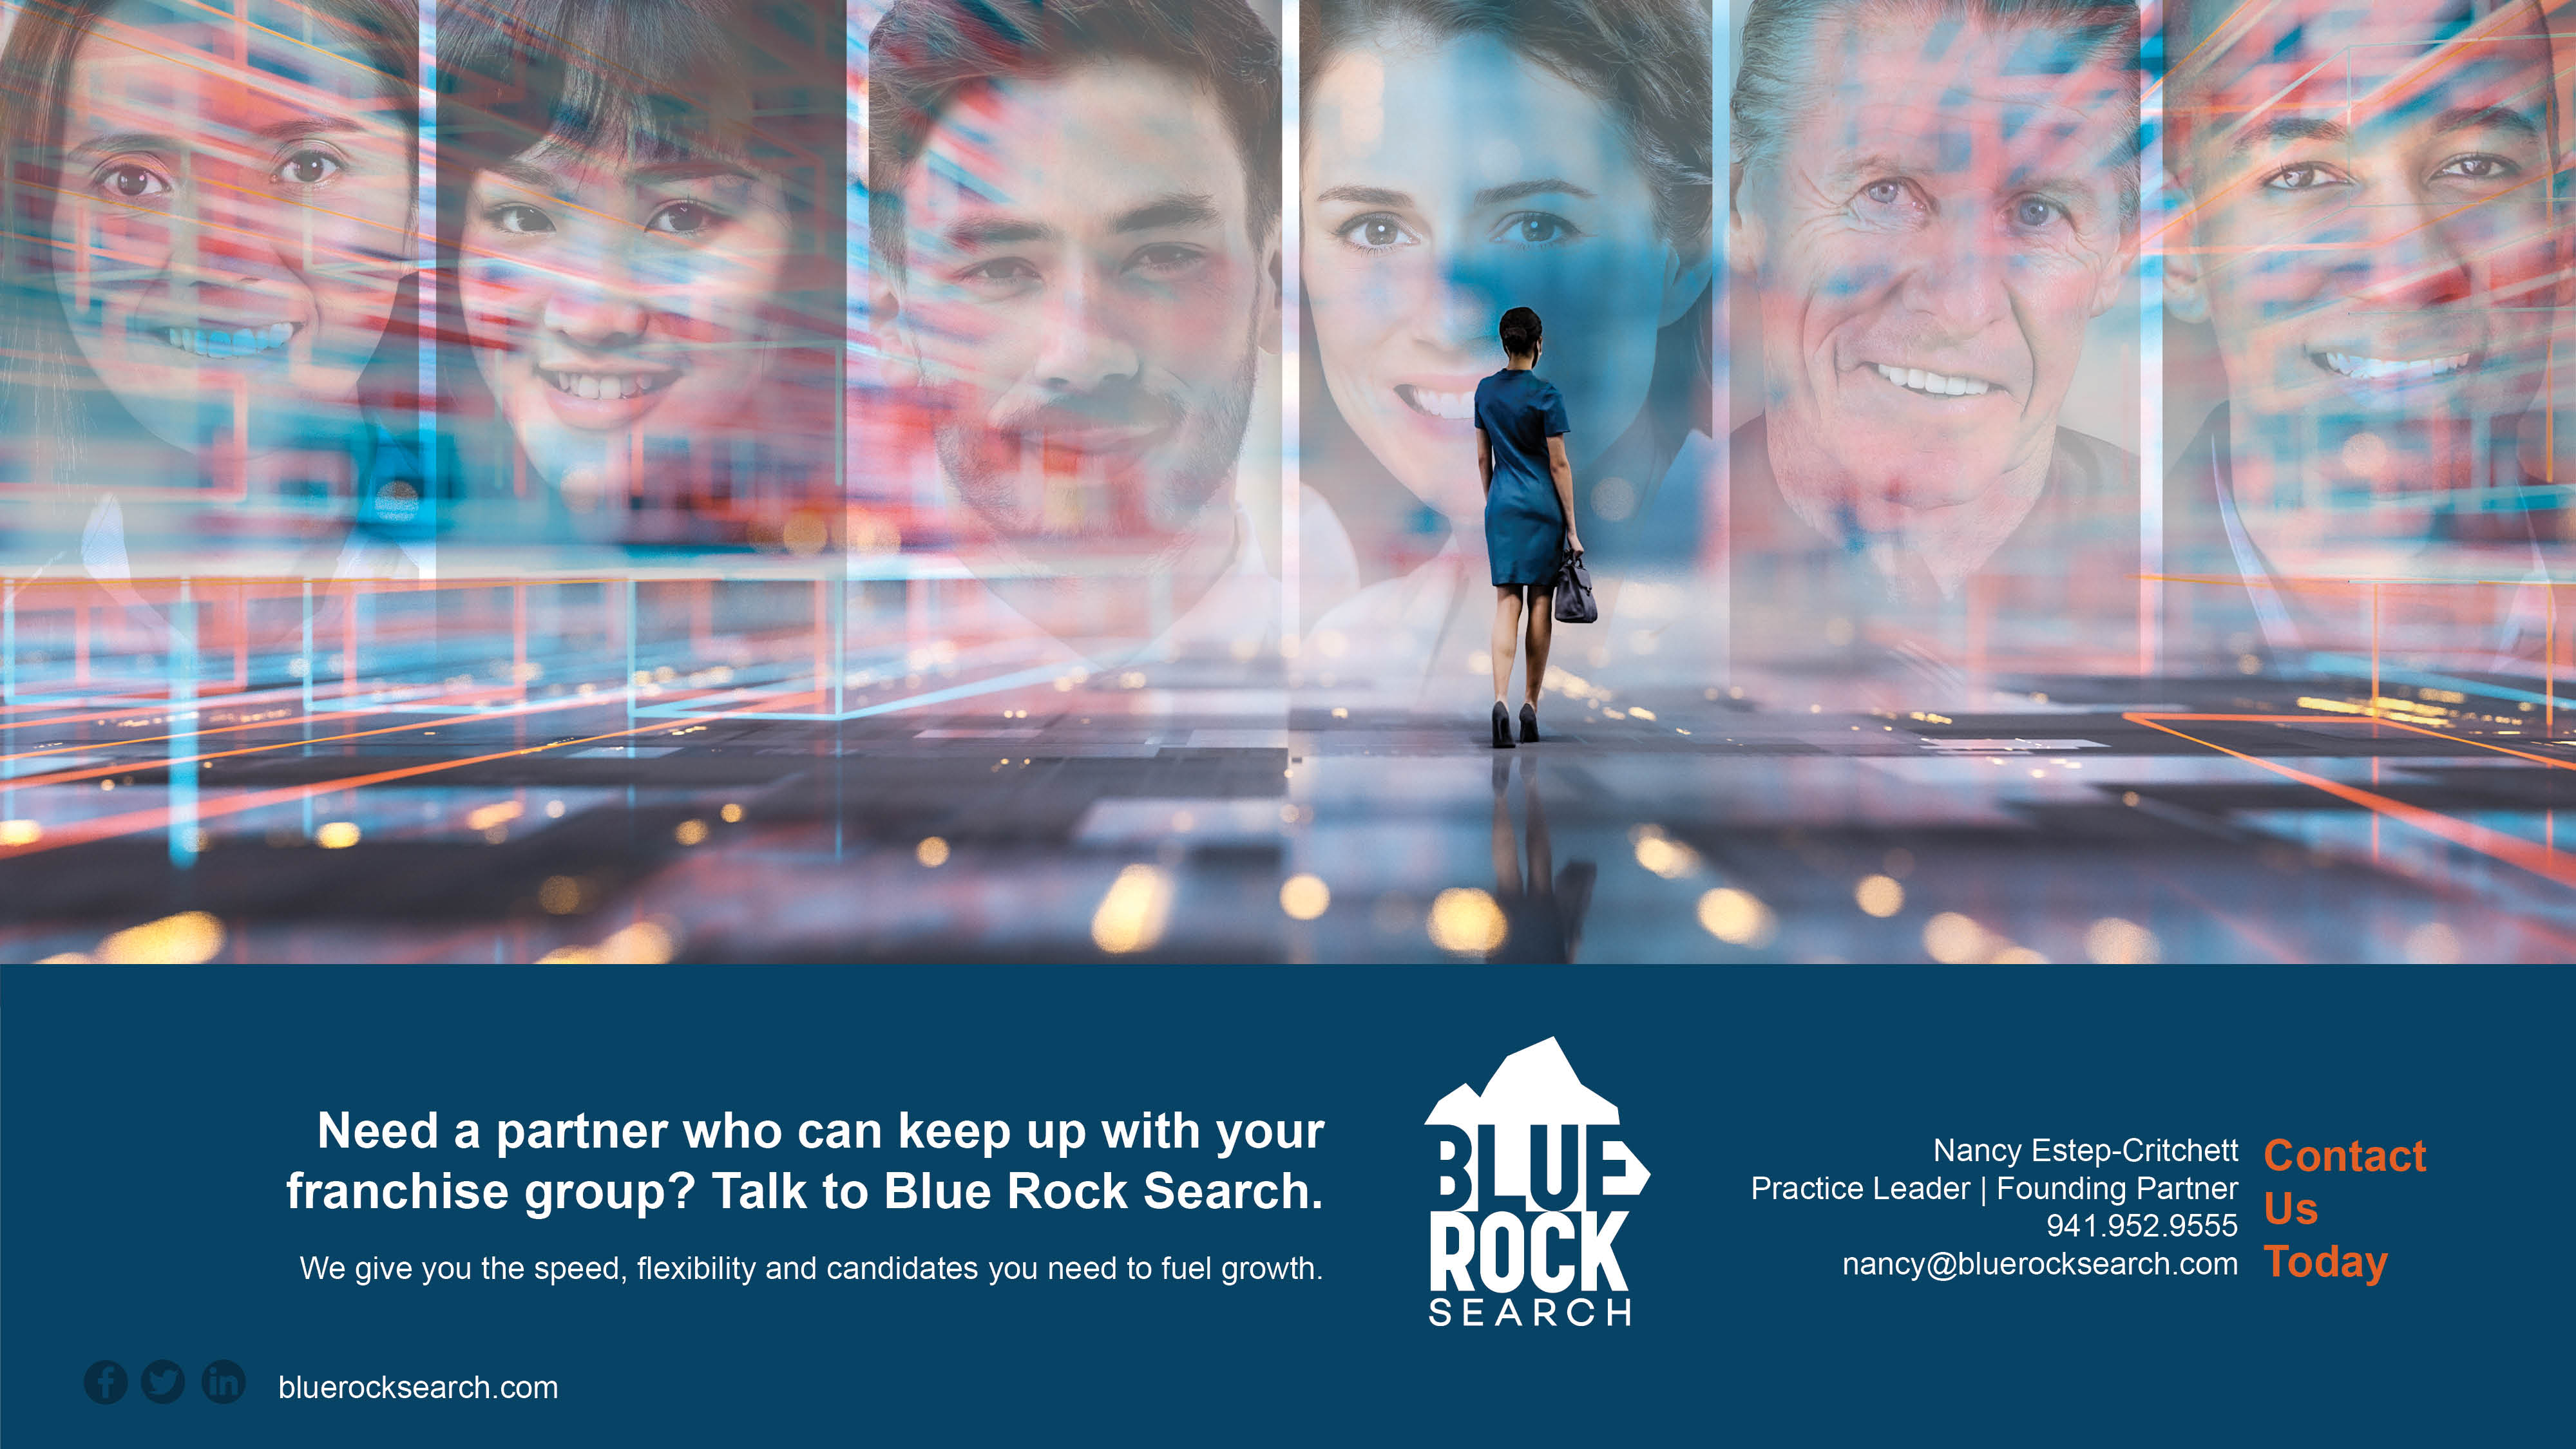 Blue Rock Franchise Images 3.22 6.jpg